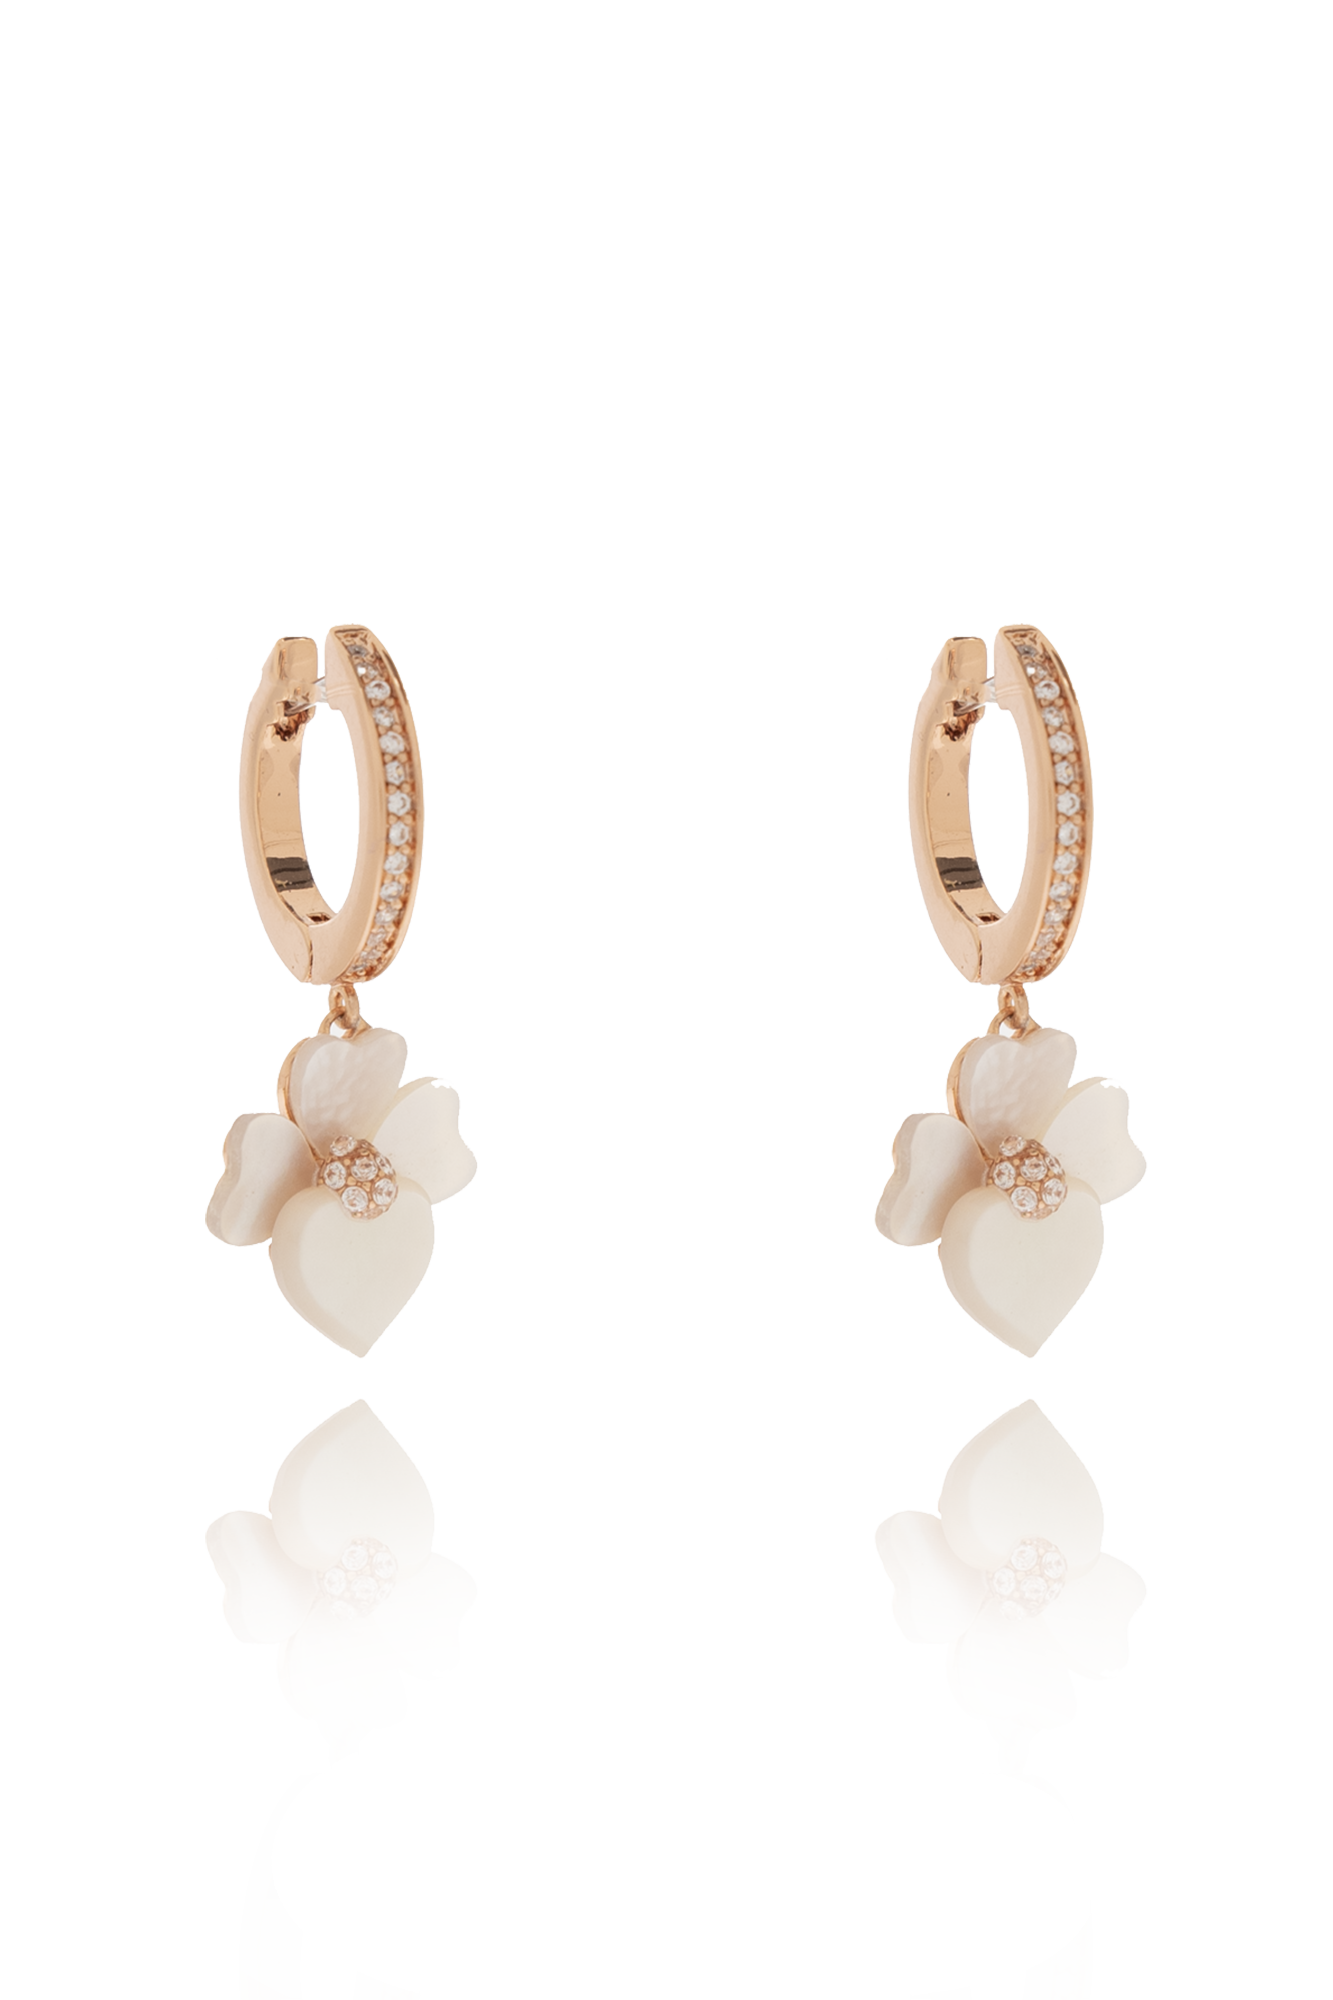 Kate Spade Floral earrings